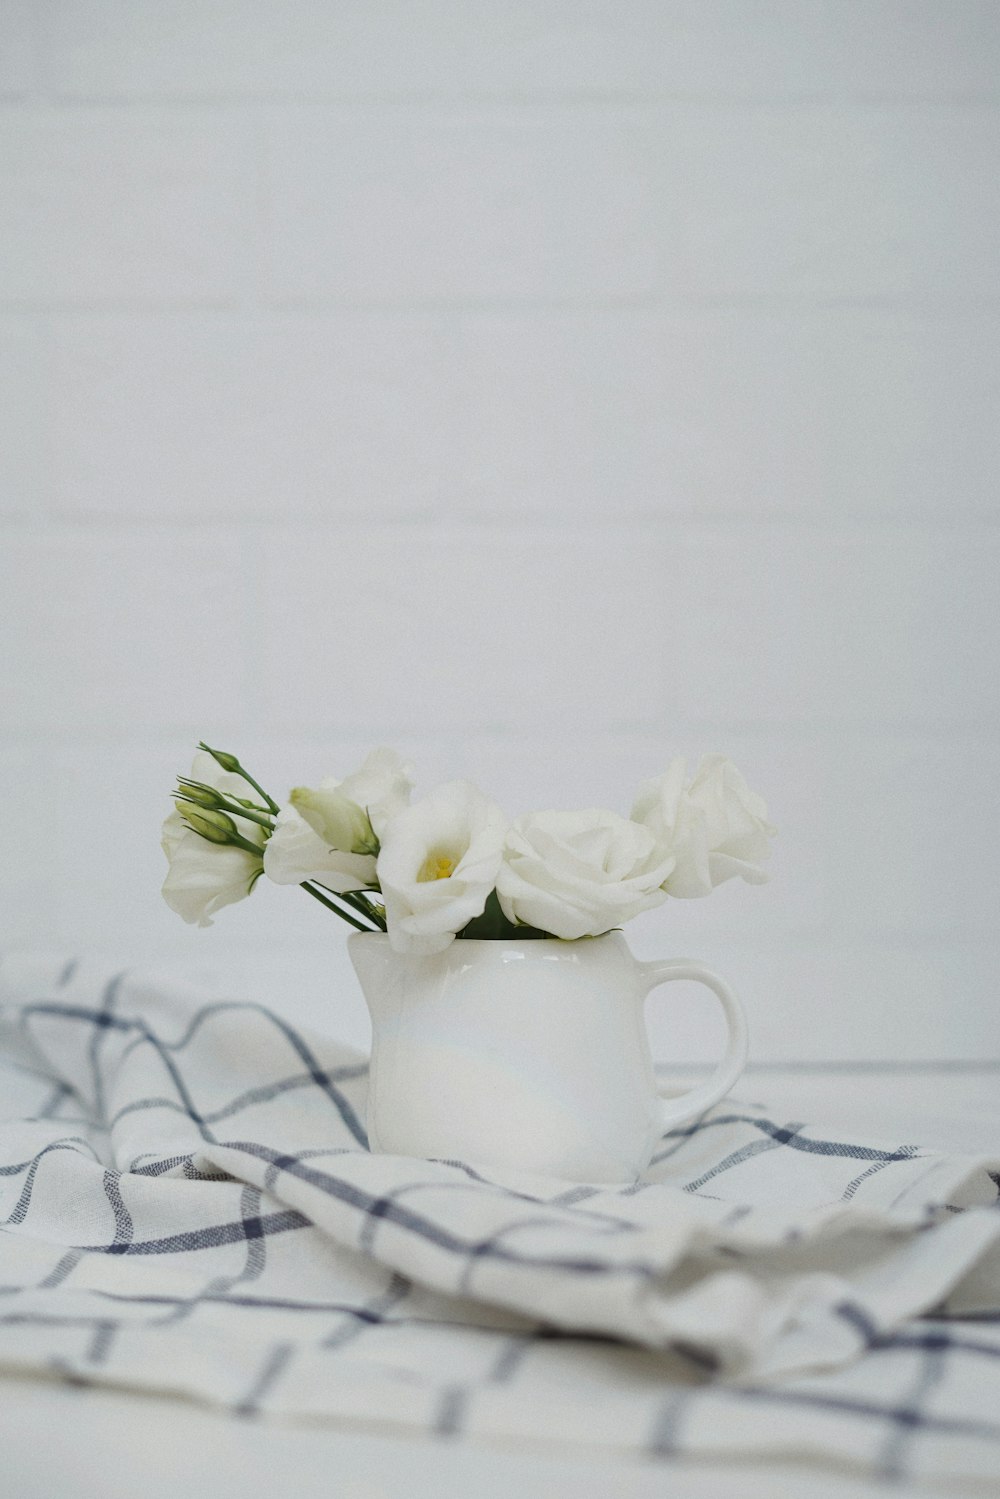 flores brancas no vaso de cerâmica branco